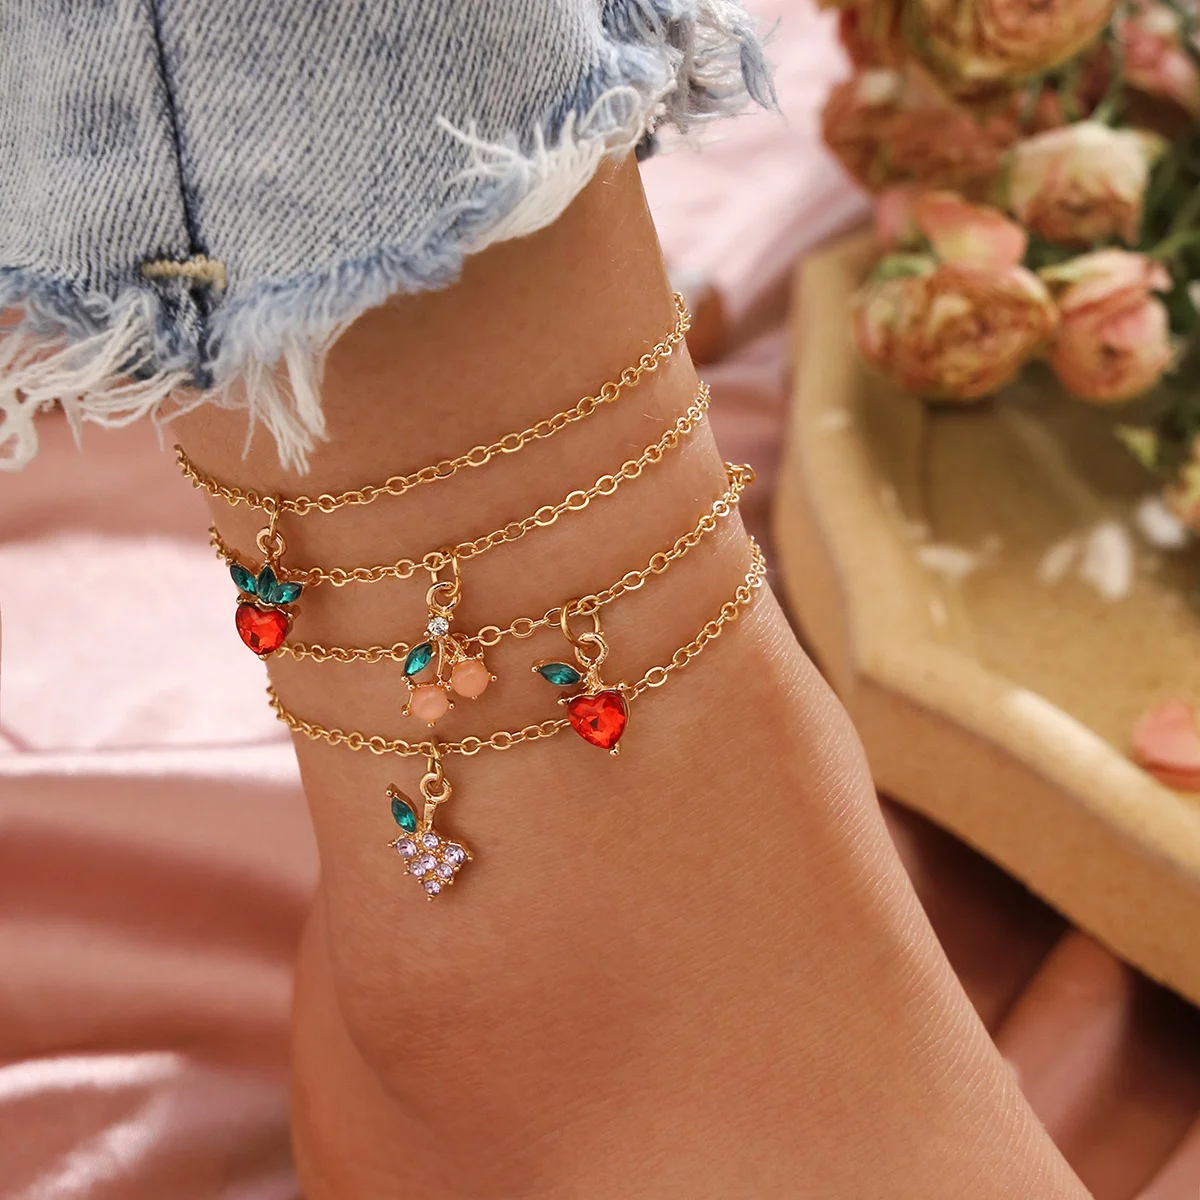 

Summer Diamond Fruit Apple Strawberry Cherry Grape Pendants Link Chain Foot Chain Ankle Bracelet Anklets for Women Girls, Gold